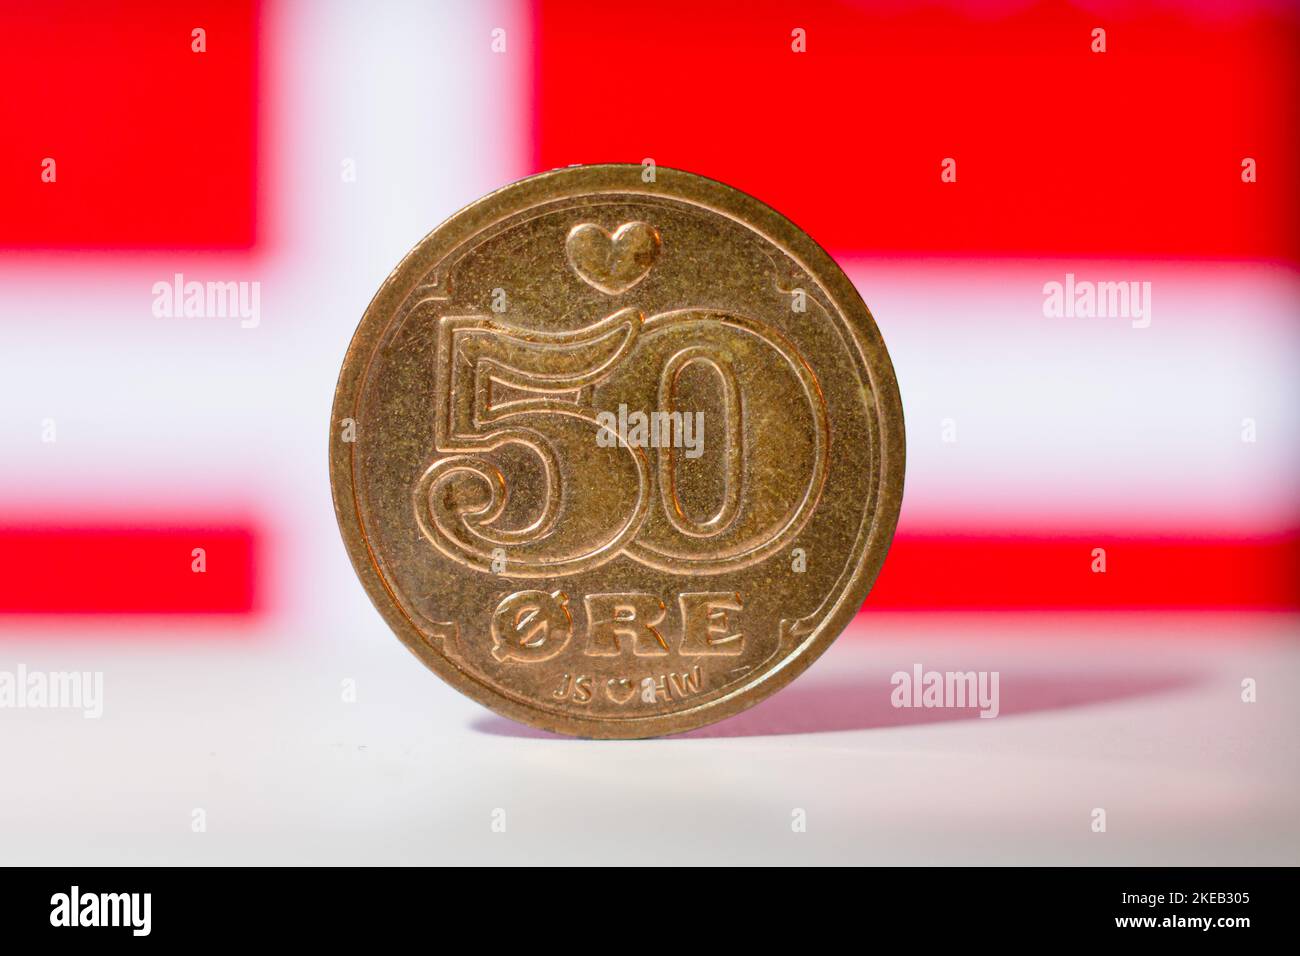 Dänisches 50-Erz mit einer dänischen Flagge im Hintergrund – Makro-flacher Fokus Stockfoto